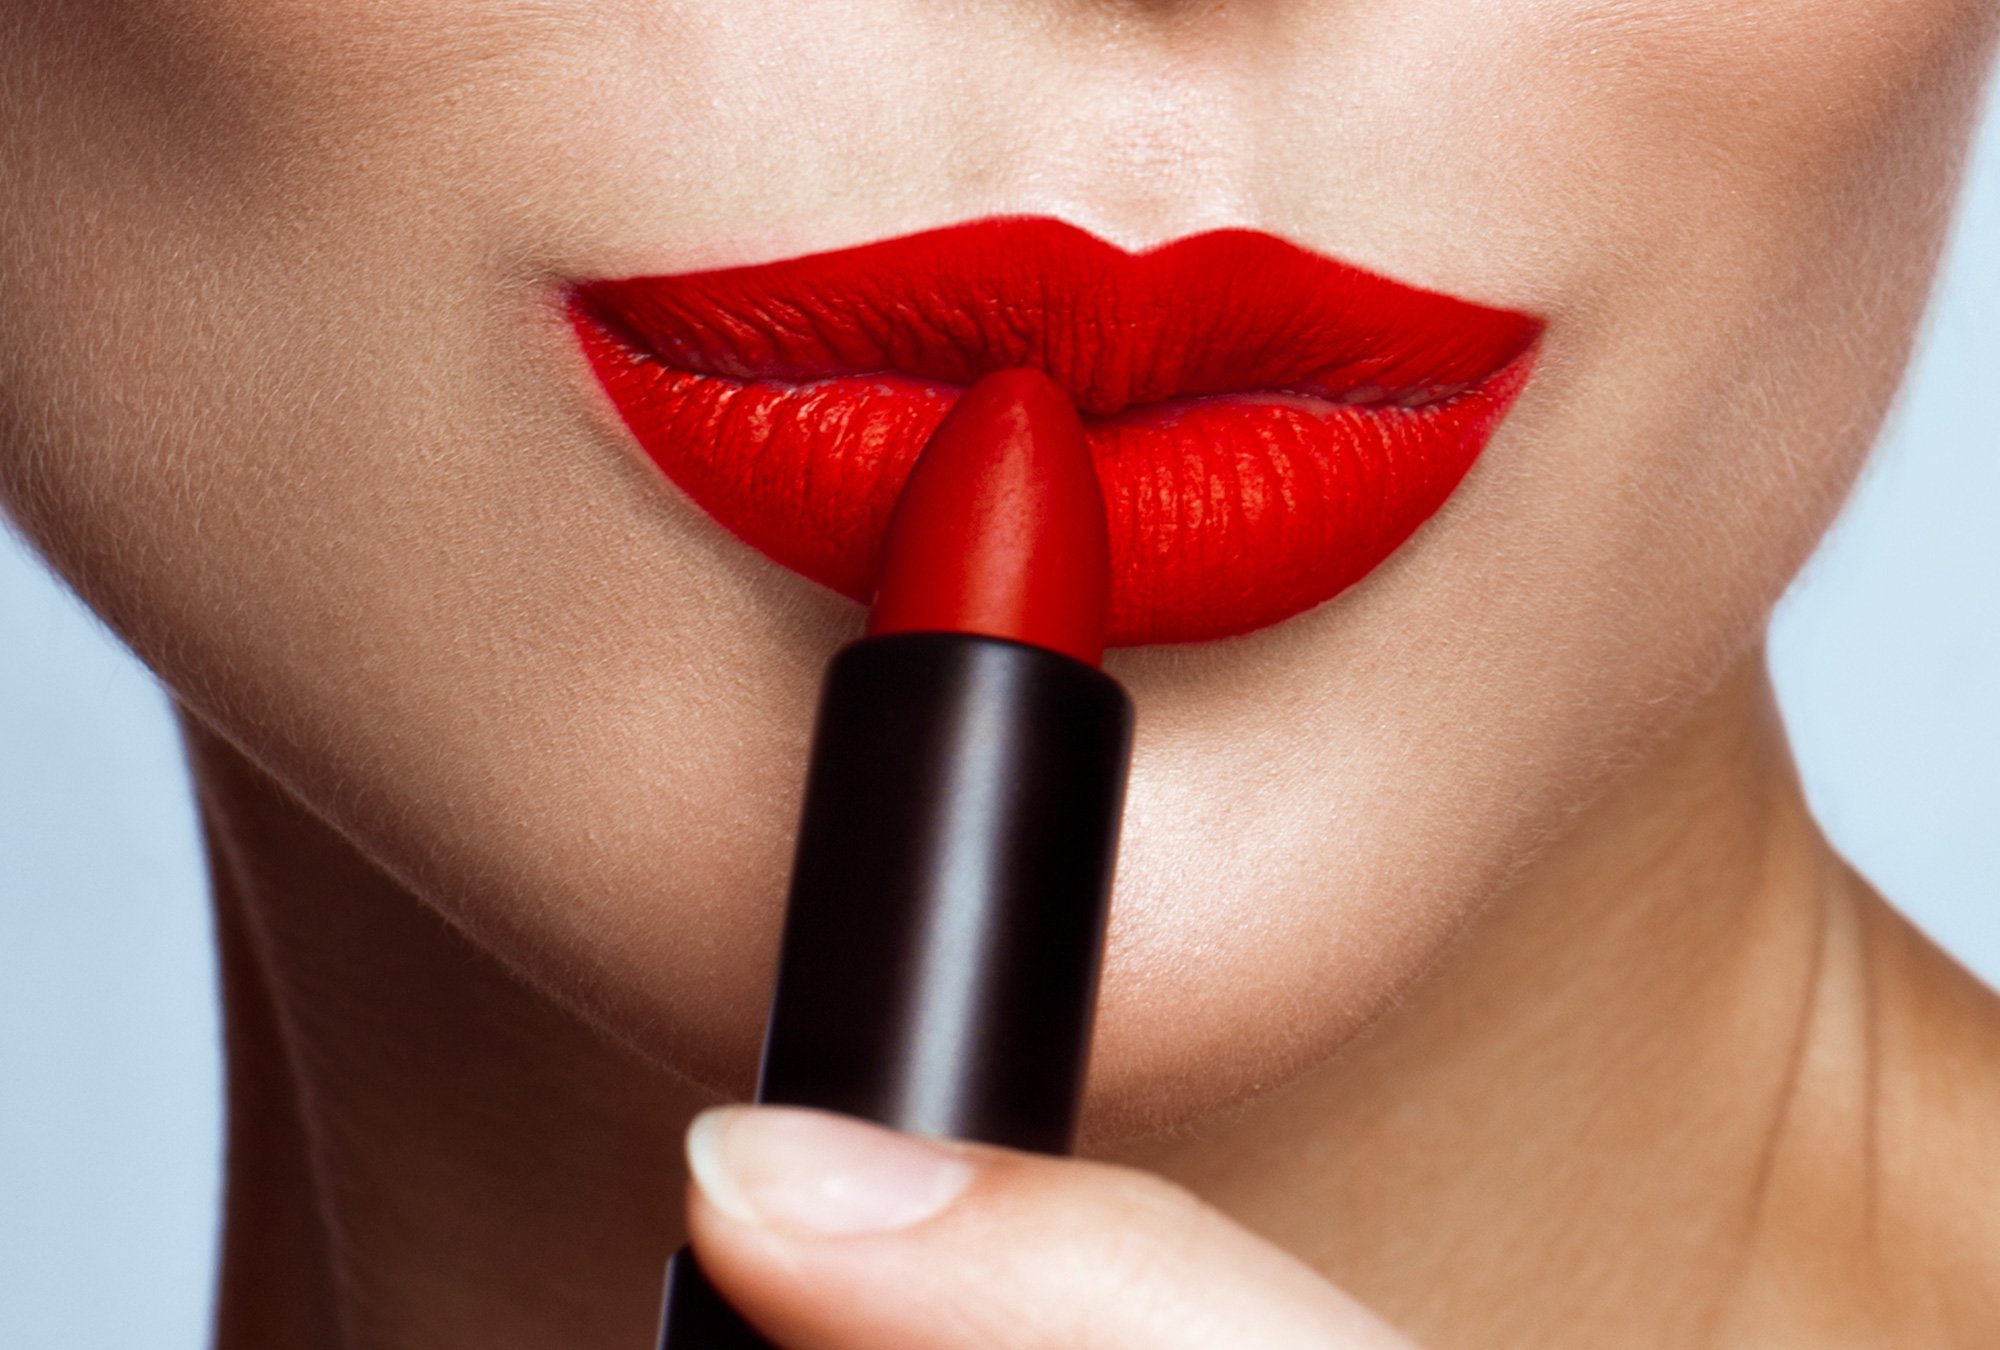 El efecto lipstick puede aplicarse a cualquier mercado.